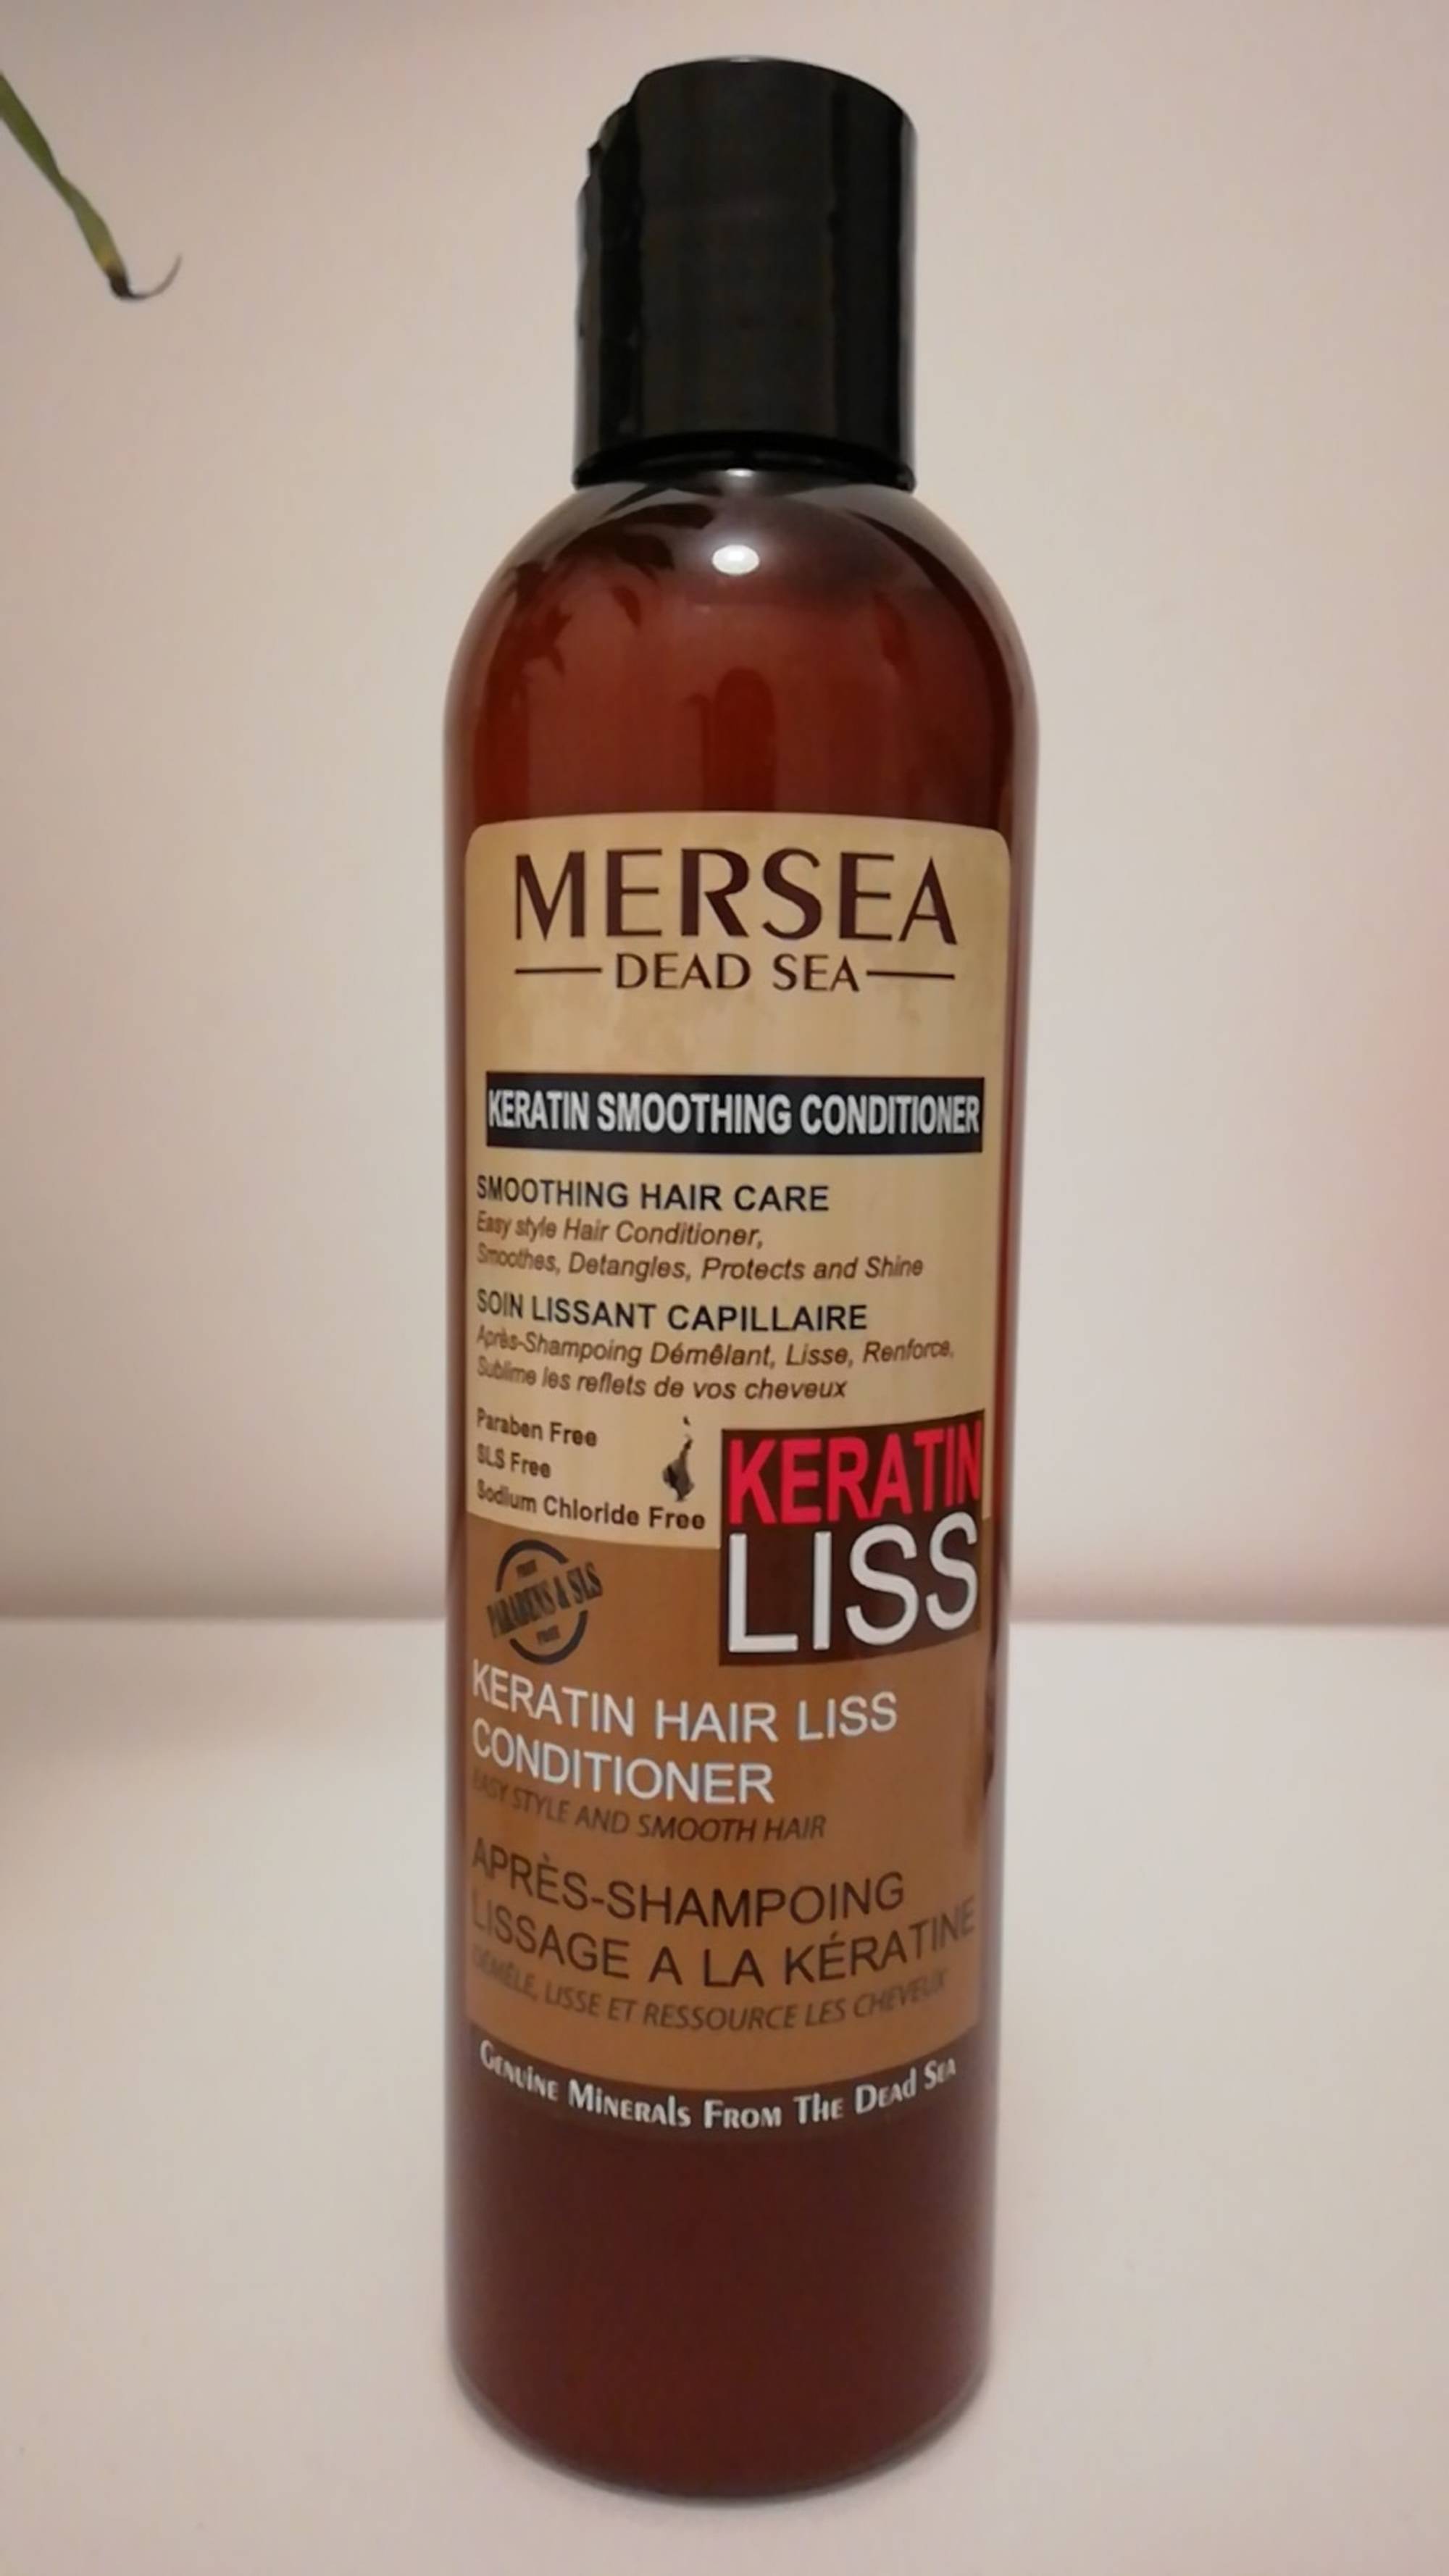 MERSEA DEAD SEA - Après-shampooing lissage à la kératine